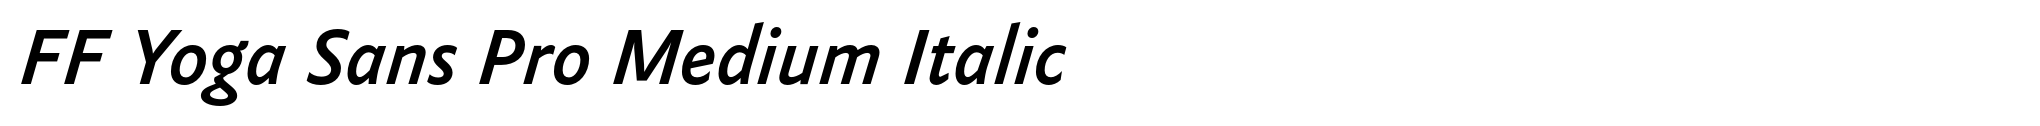 FF Yoga Sans Pro Medium Italic image